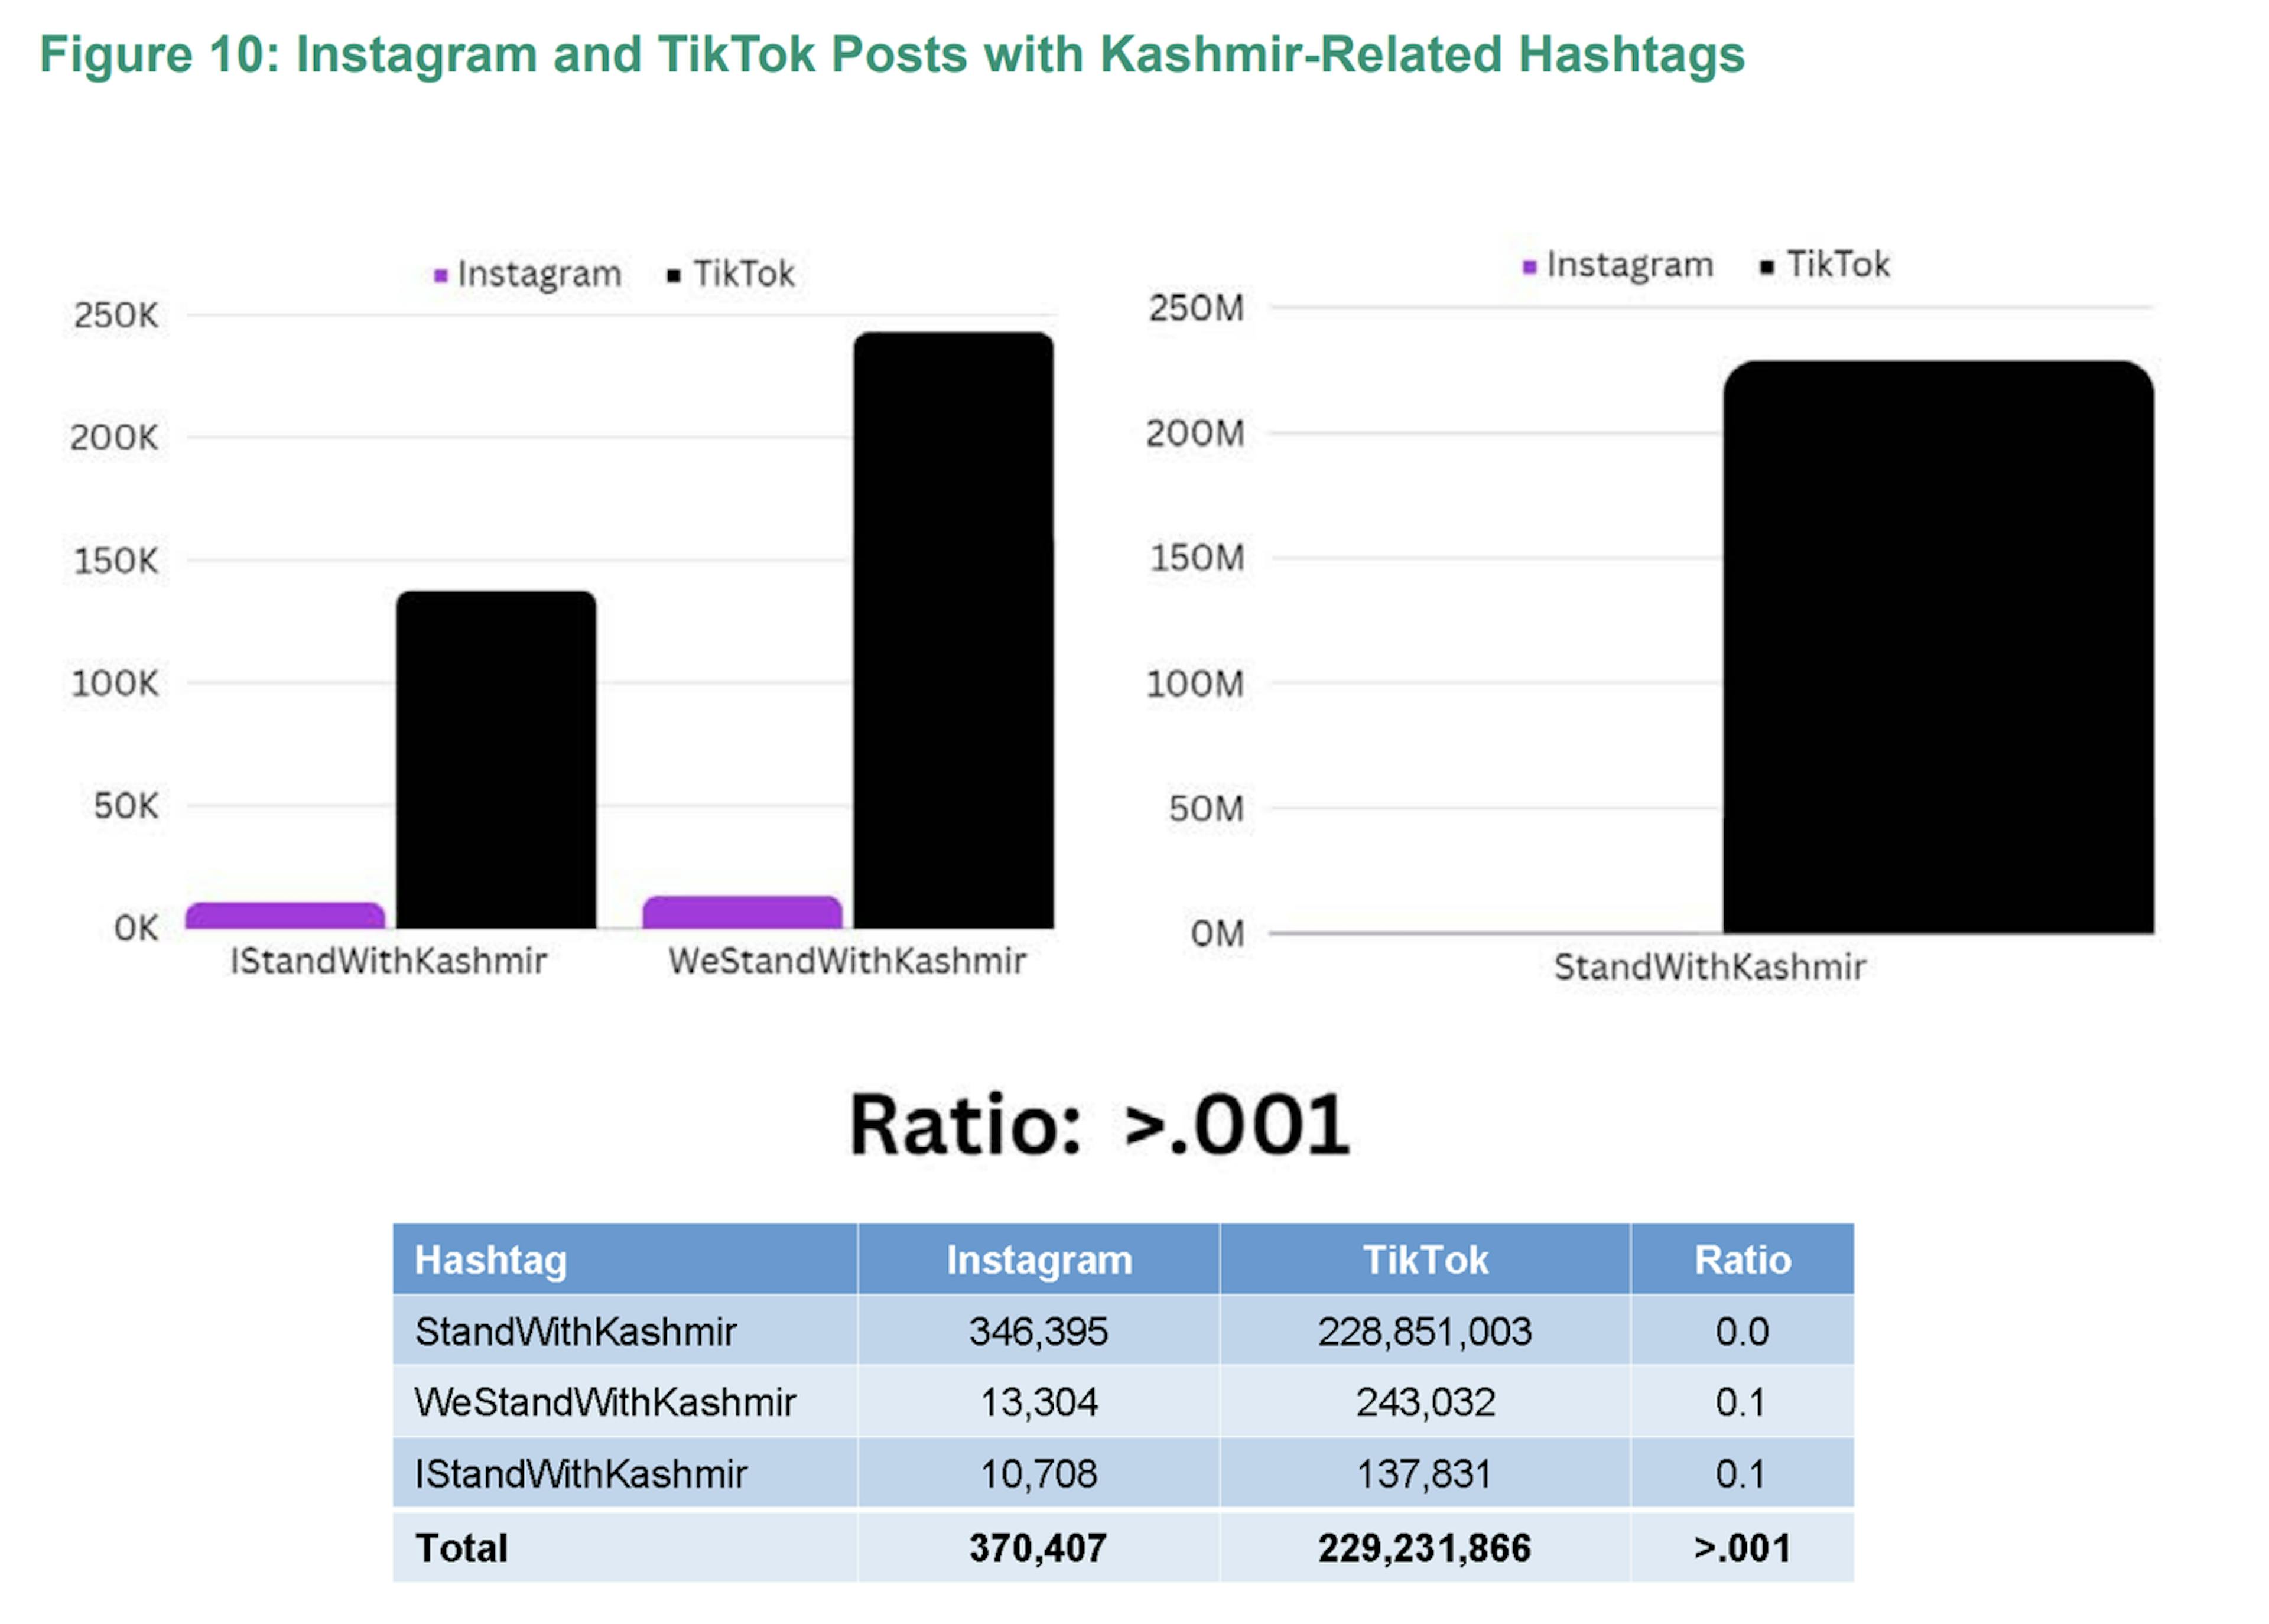 Le nombre de publications avec des hashtags liés au Cachemire est considérablement plus élevé sur TikTok, le nombre sur TikTok étant plus de 600 fois supérieur à celui sur Instagram.